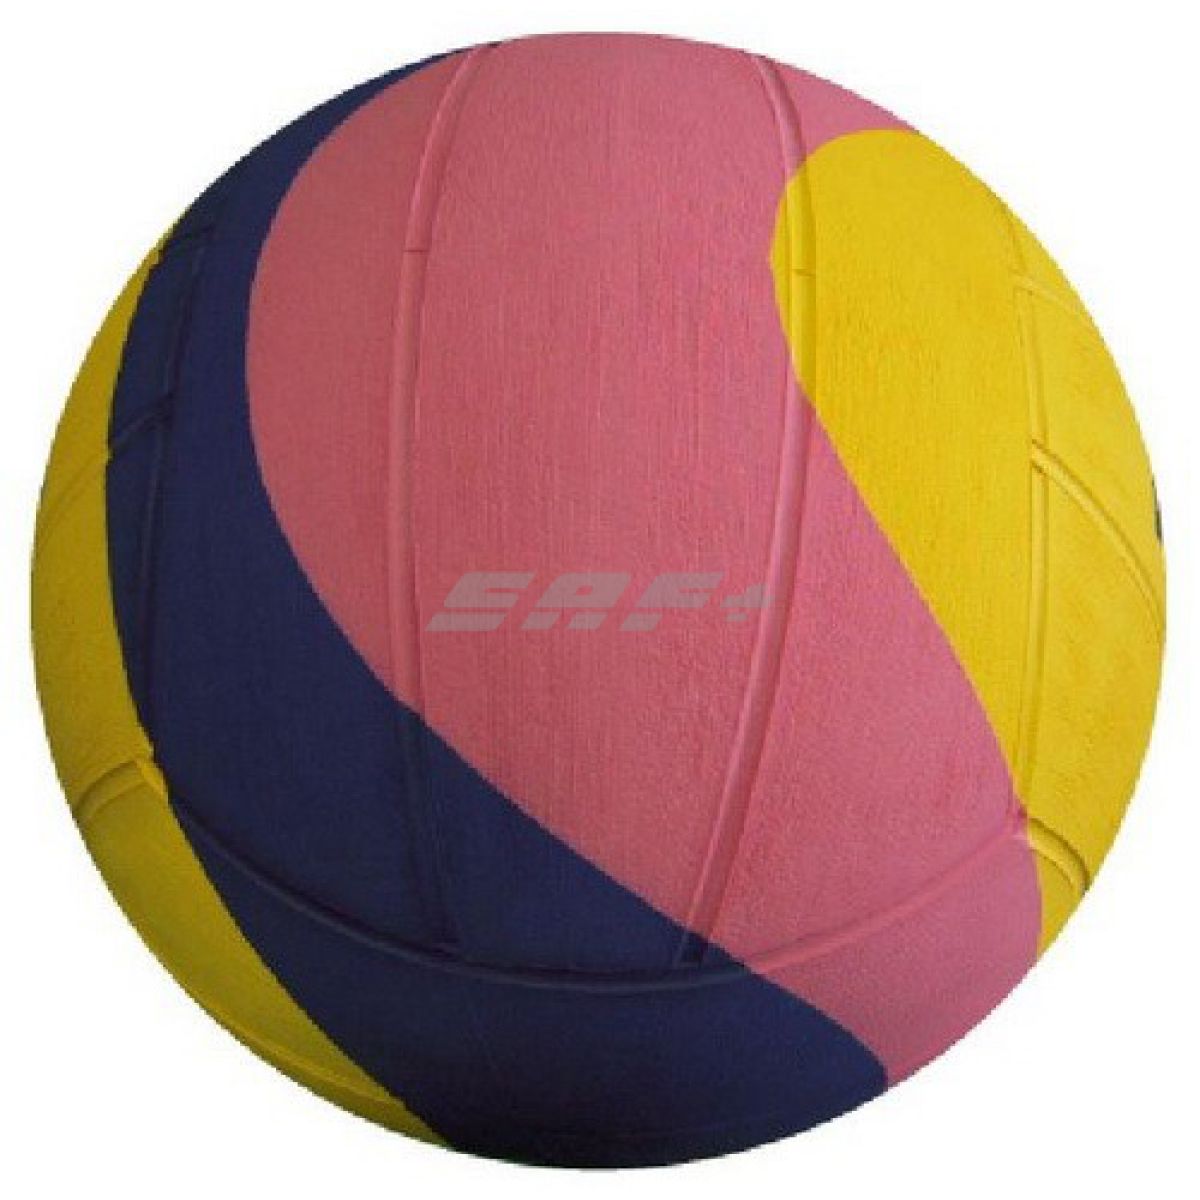 Мяч для водного поло Mikasa W6009W